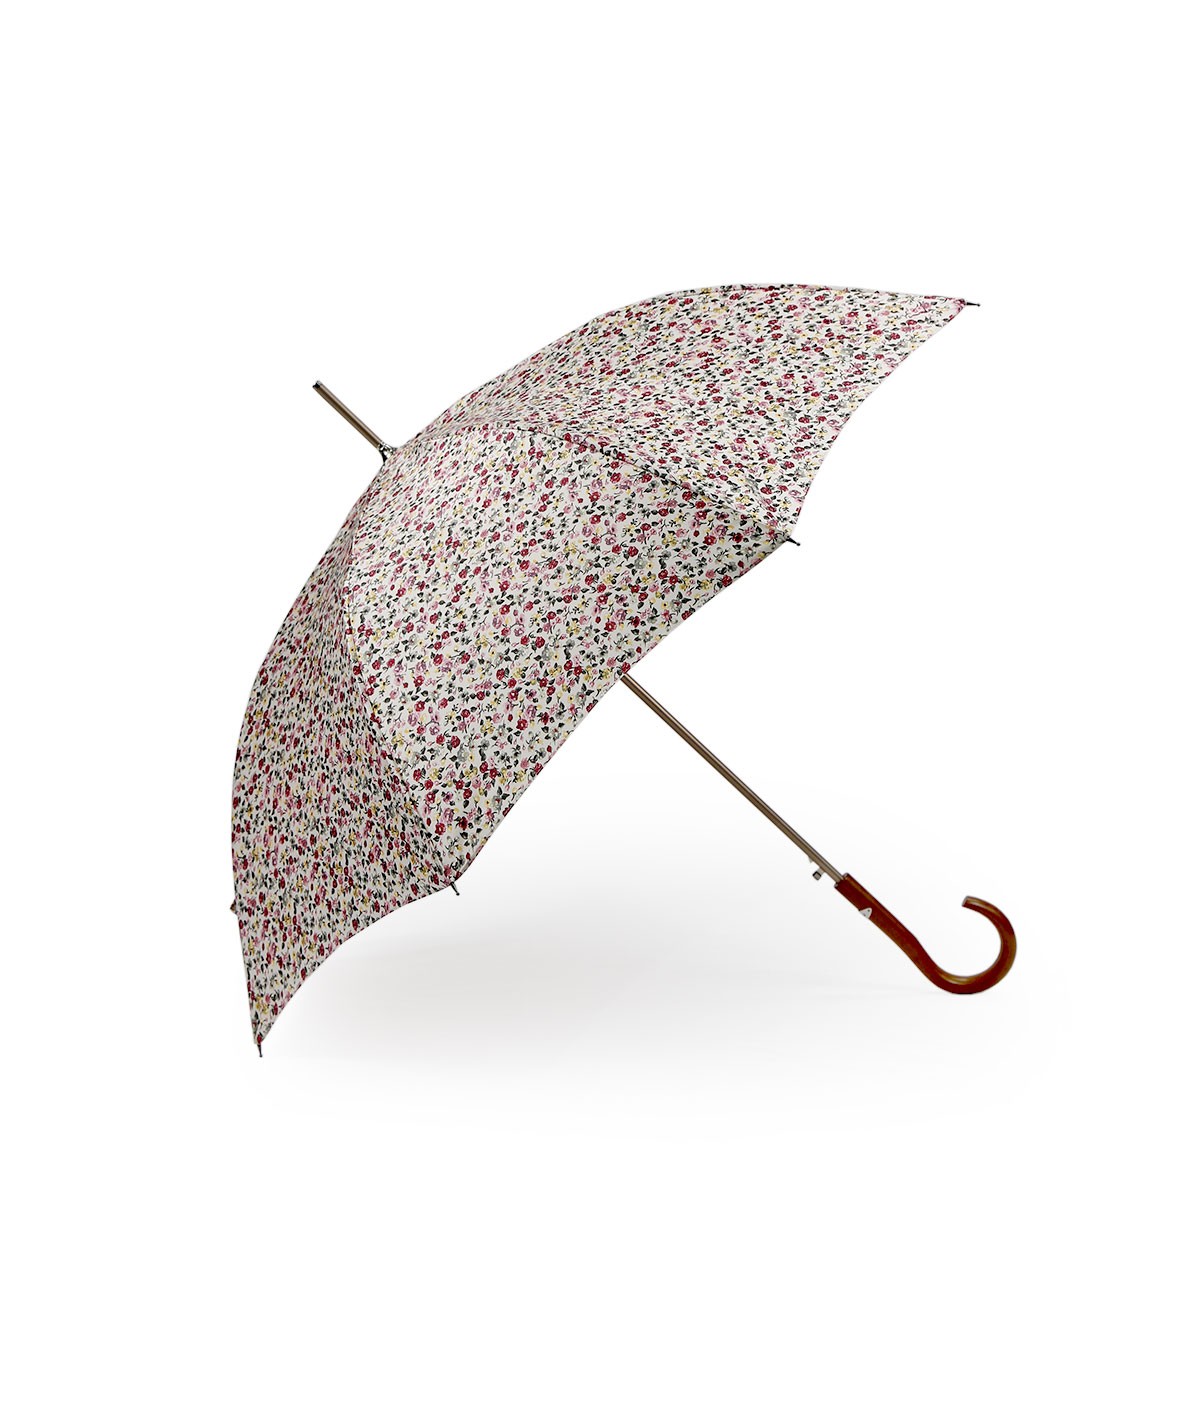 → Parapluie Satin Imprimé Fantaisie - Long Automatic N°6 - Made in France par Maison Pierre Vaux Fabricant Français de Parapluie